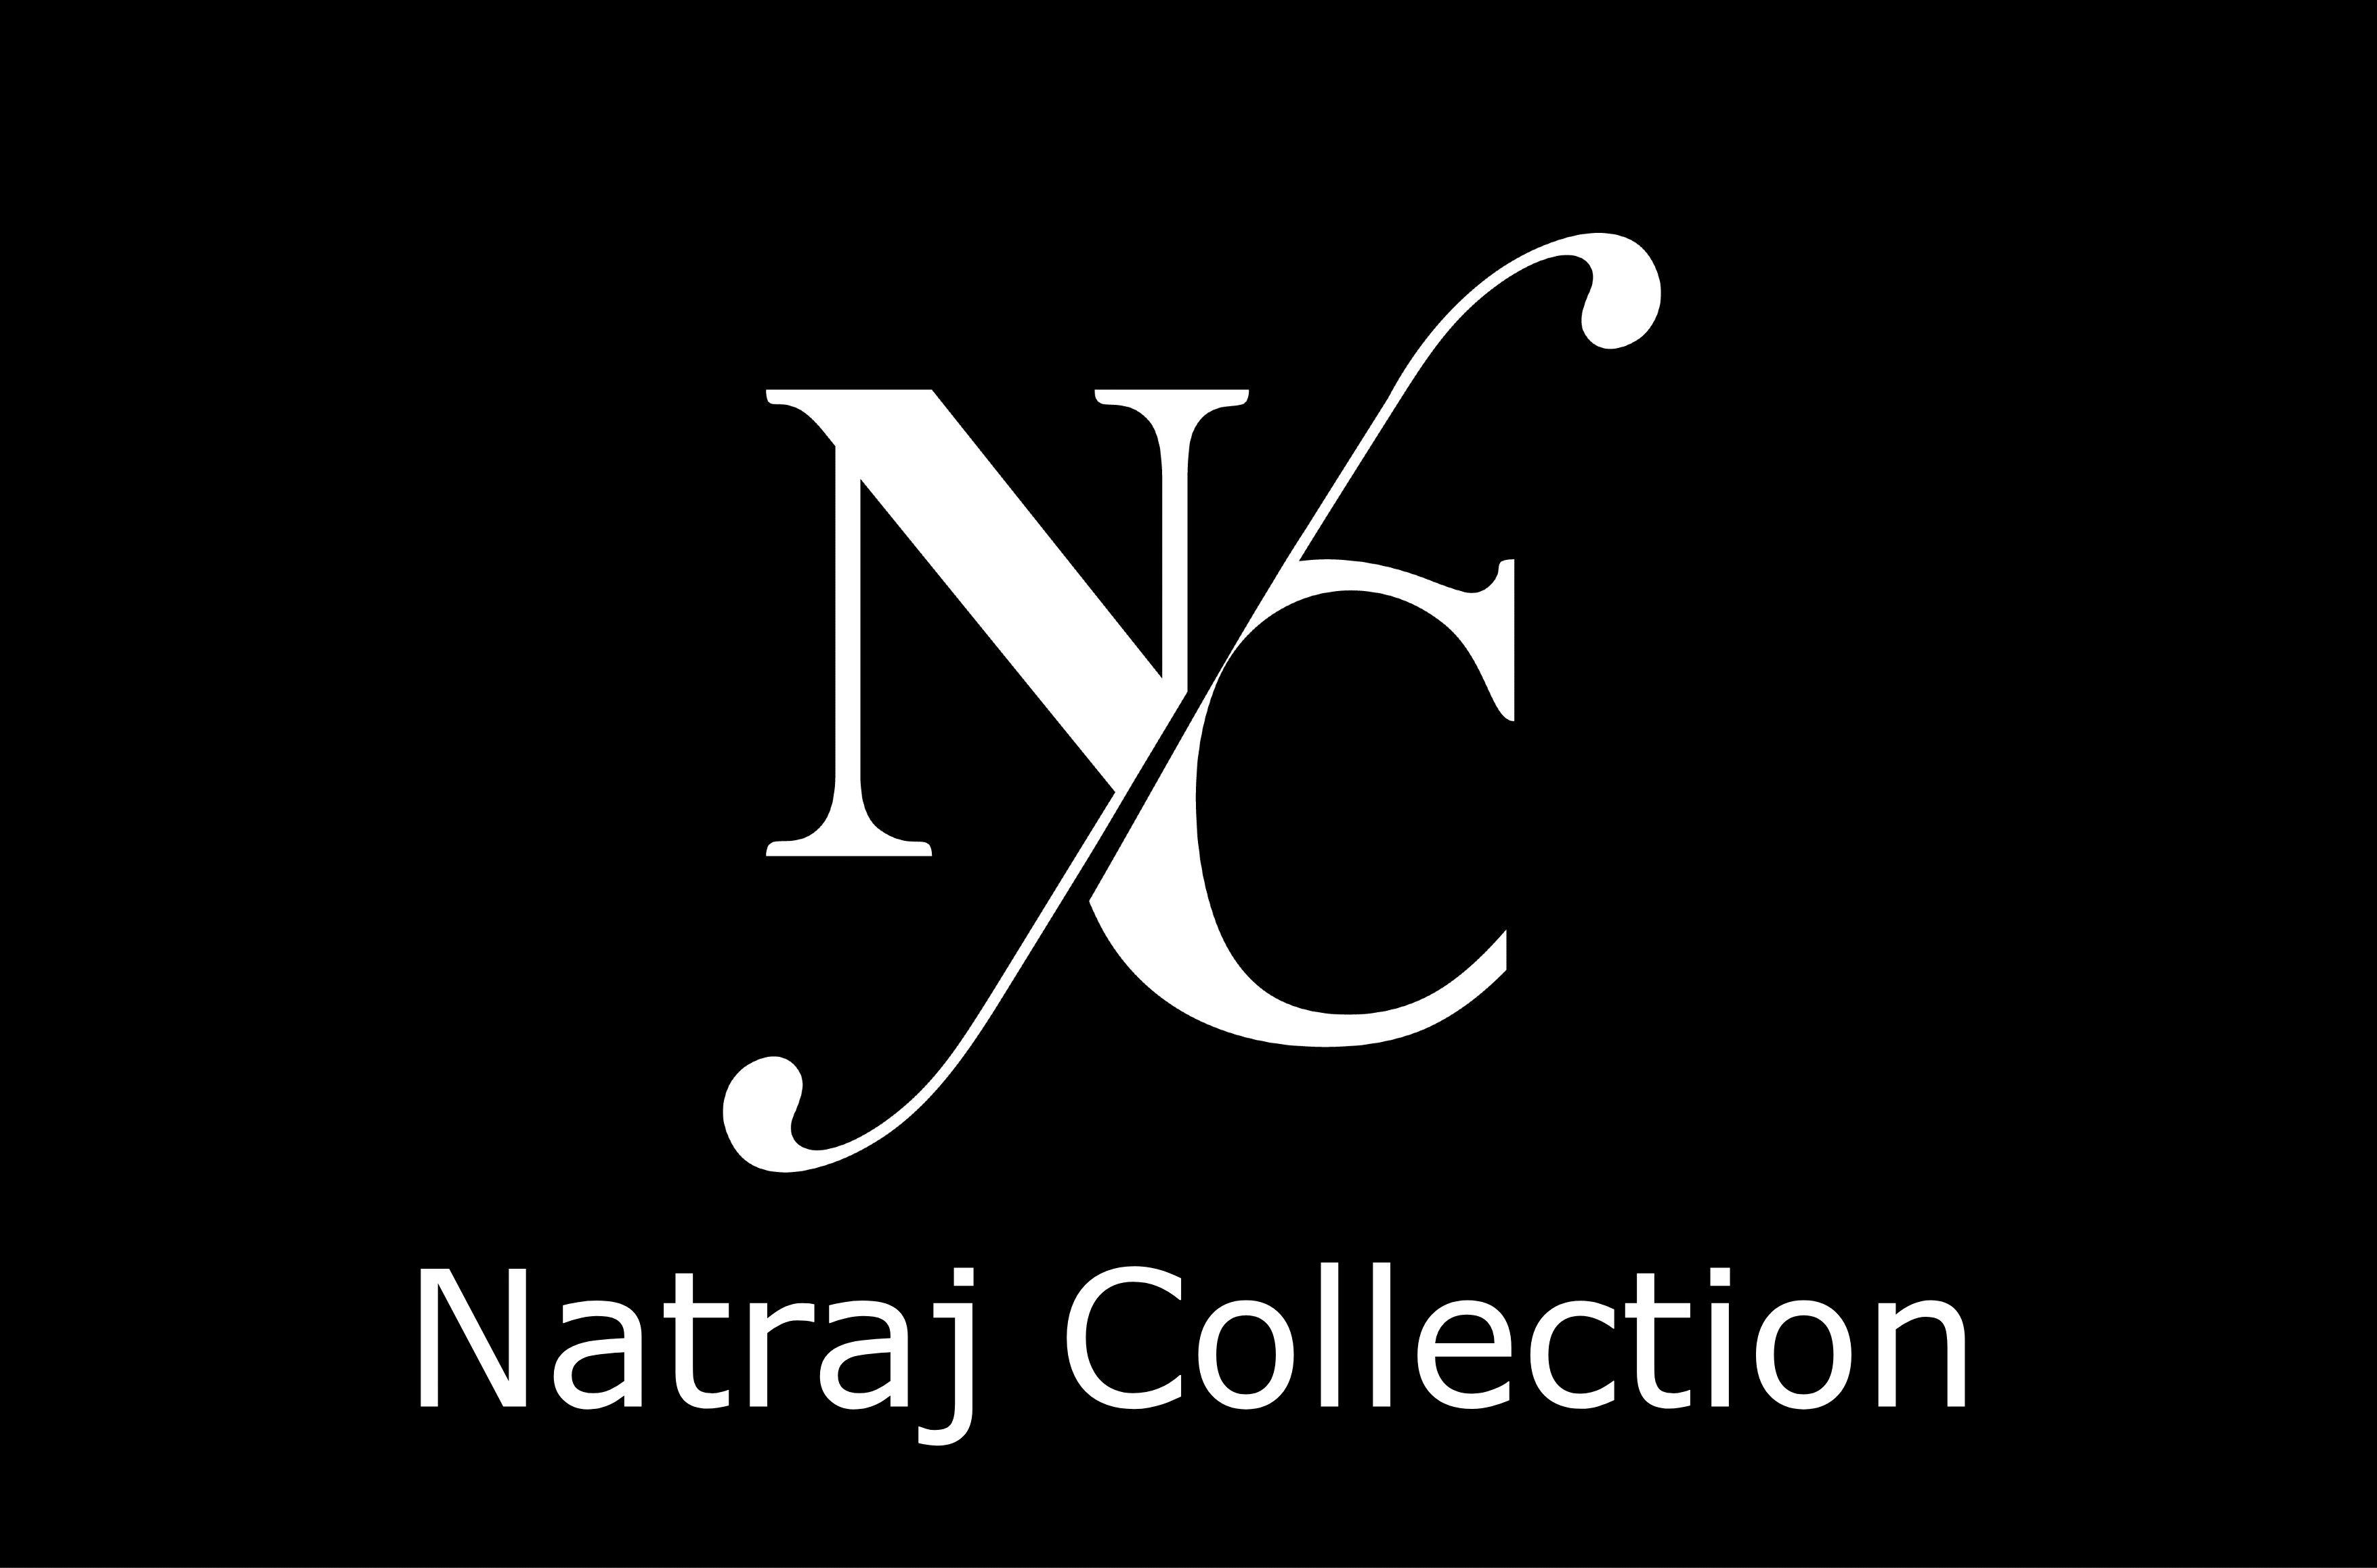 NATRAJ COLLECTION